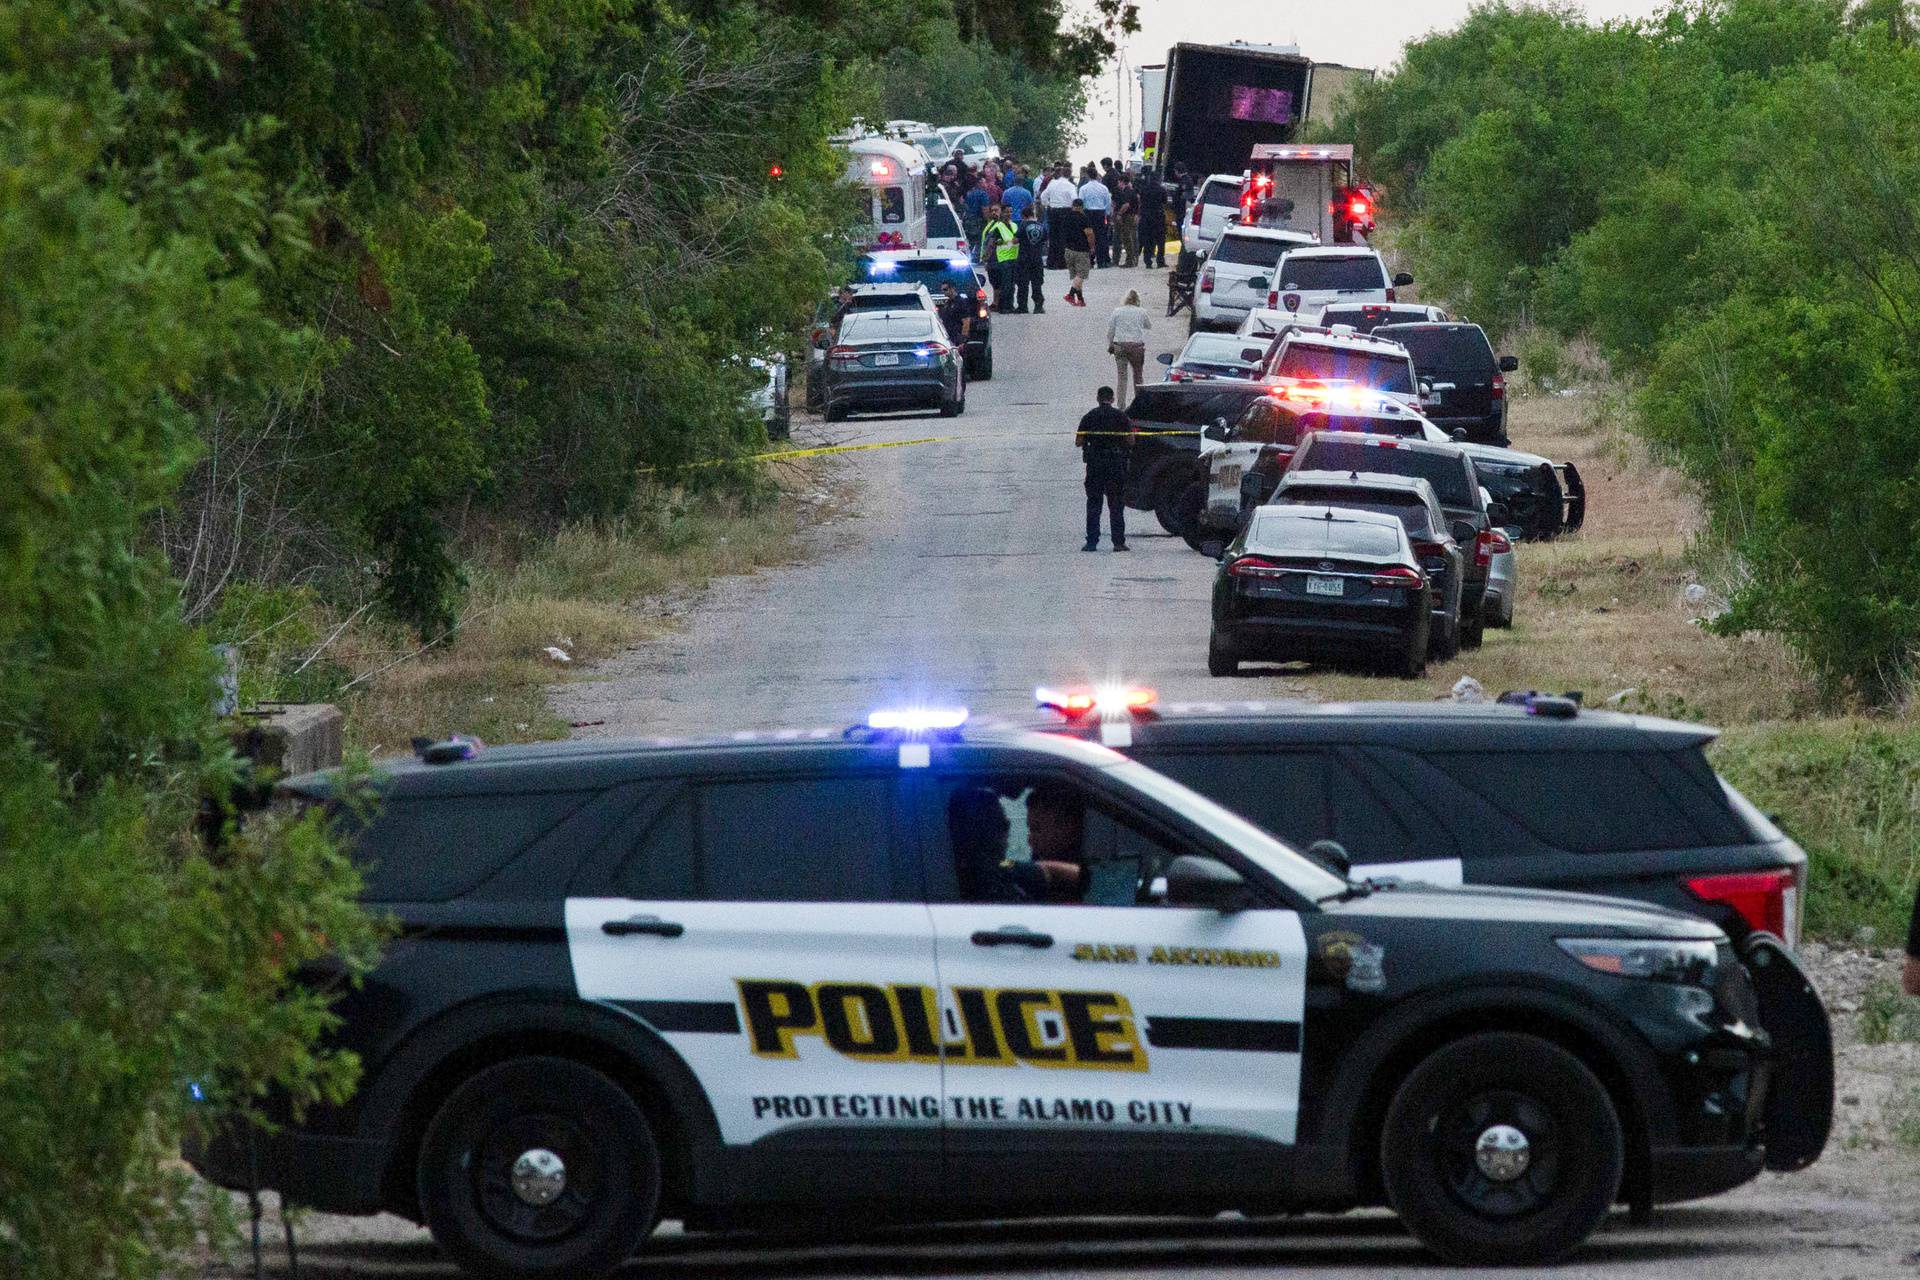 People found dead inside a trailer truck in San Antonio